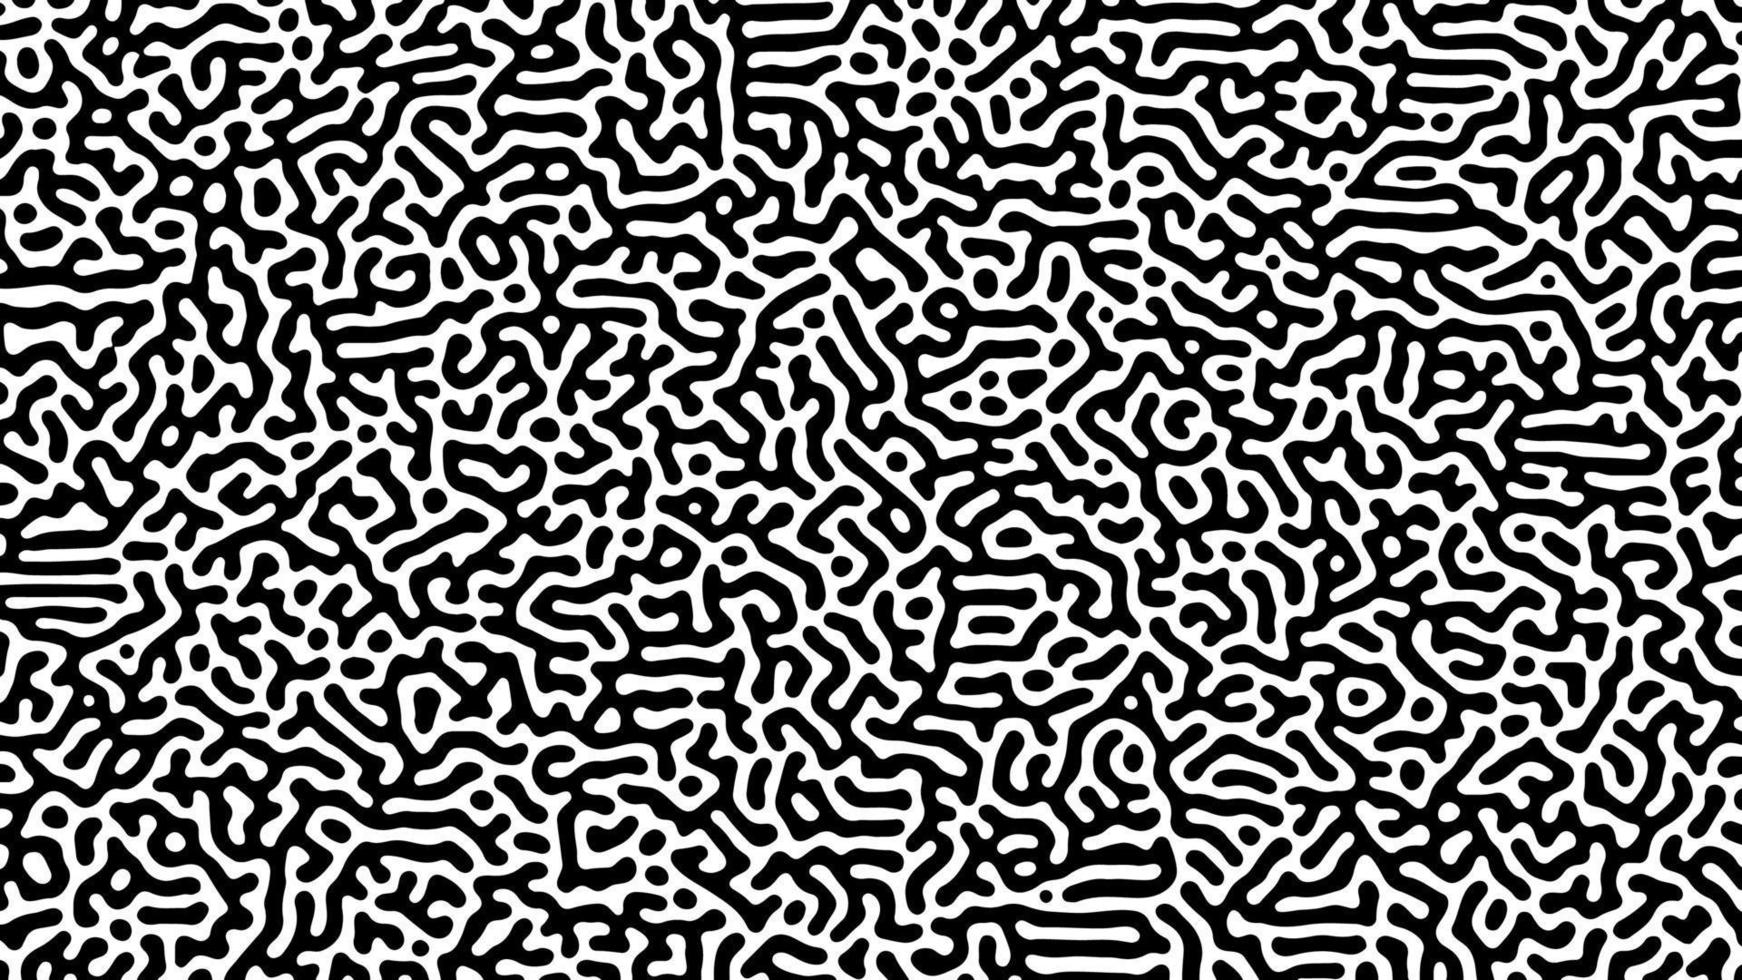 svartvit turing reaktion bakgrund. abstrakt diffusion mönster med kaotisk former. vektor illustration.